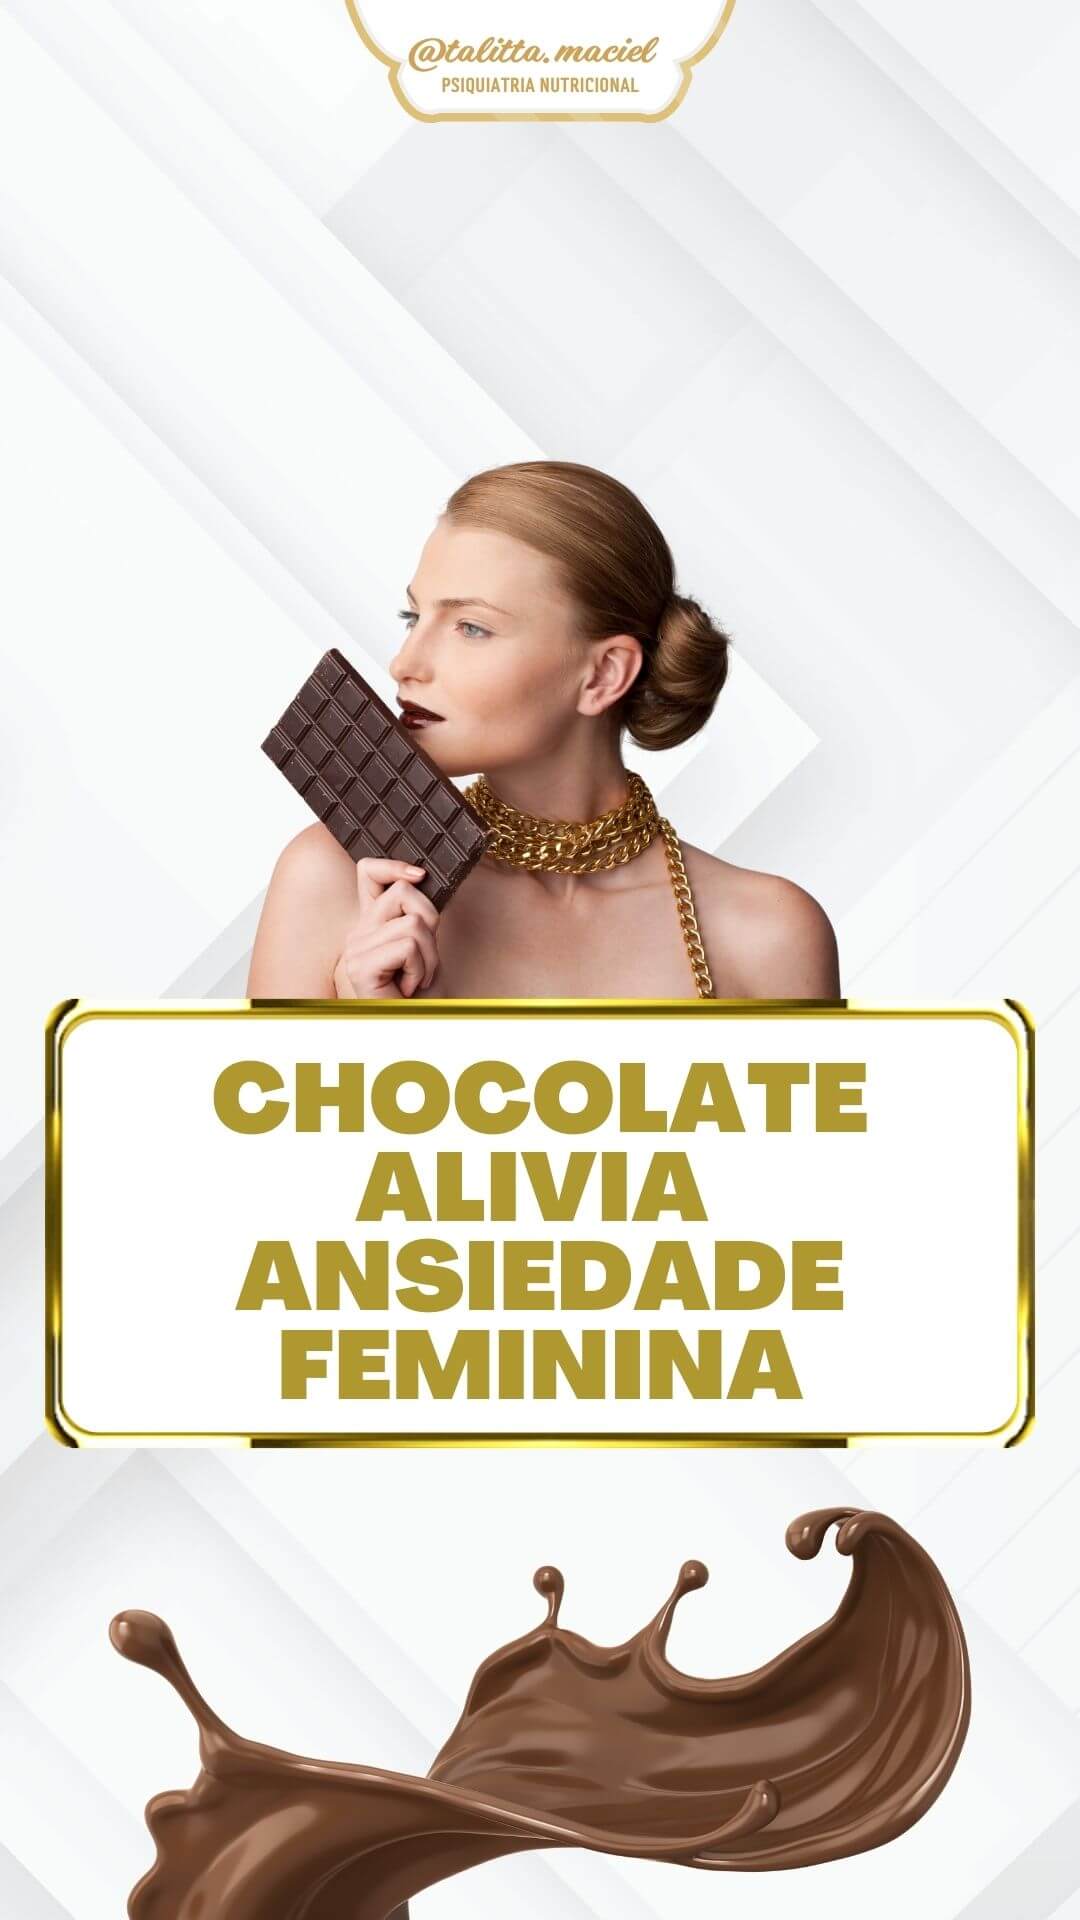 Você está visualizando atualmente Chocolate alivia a ansiedade feminina